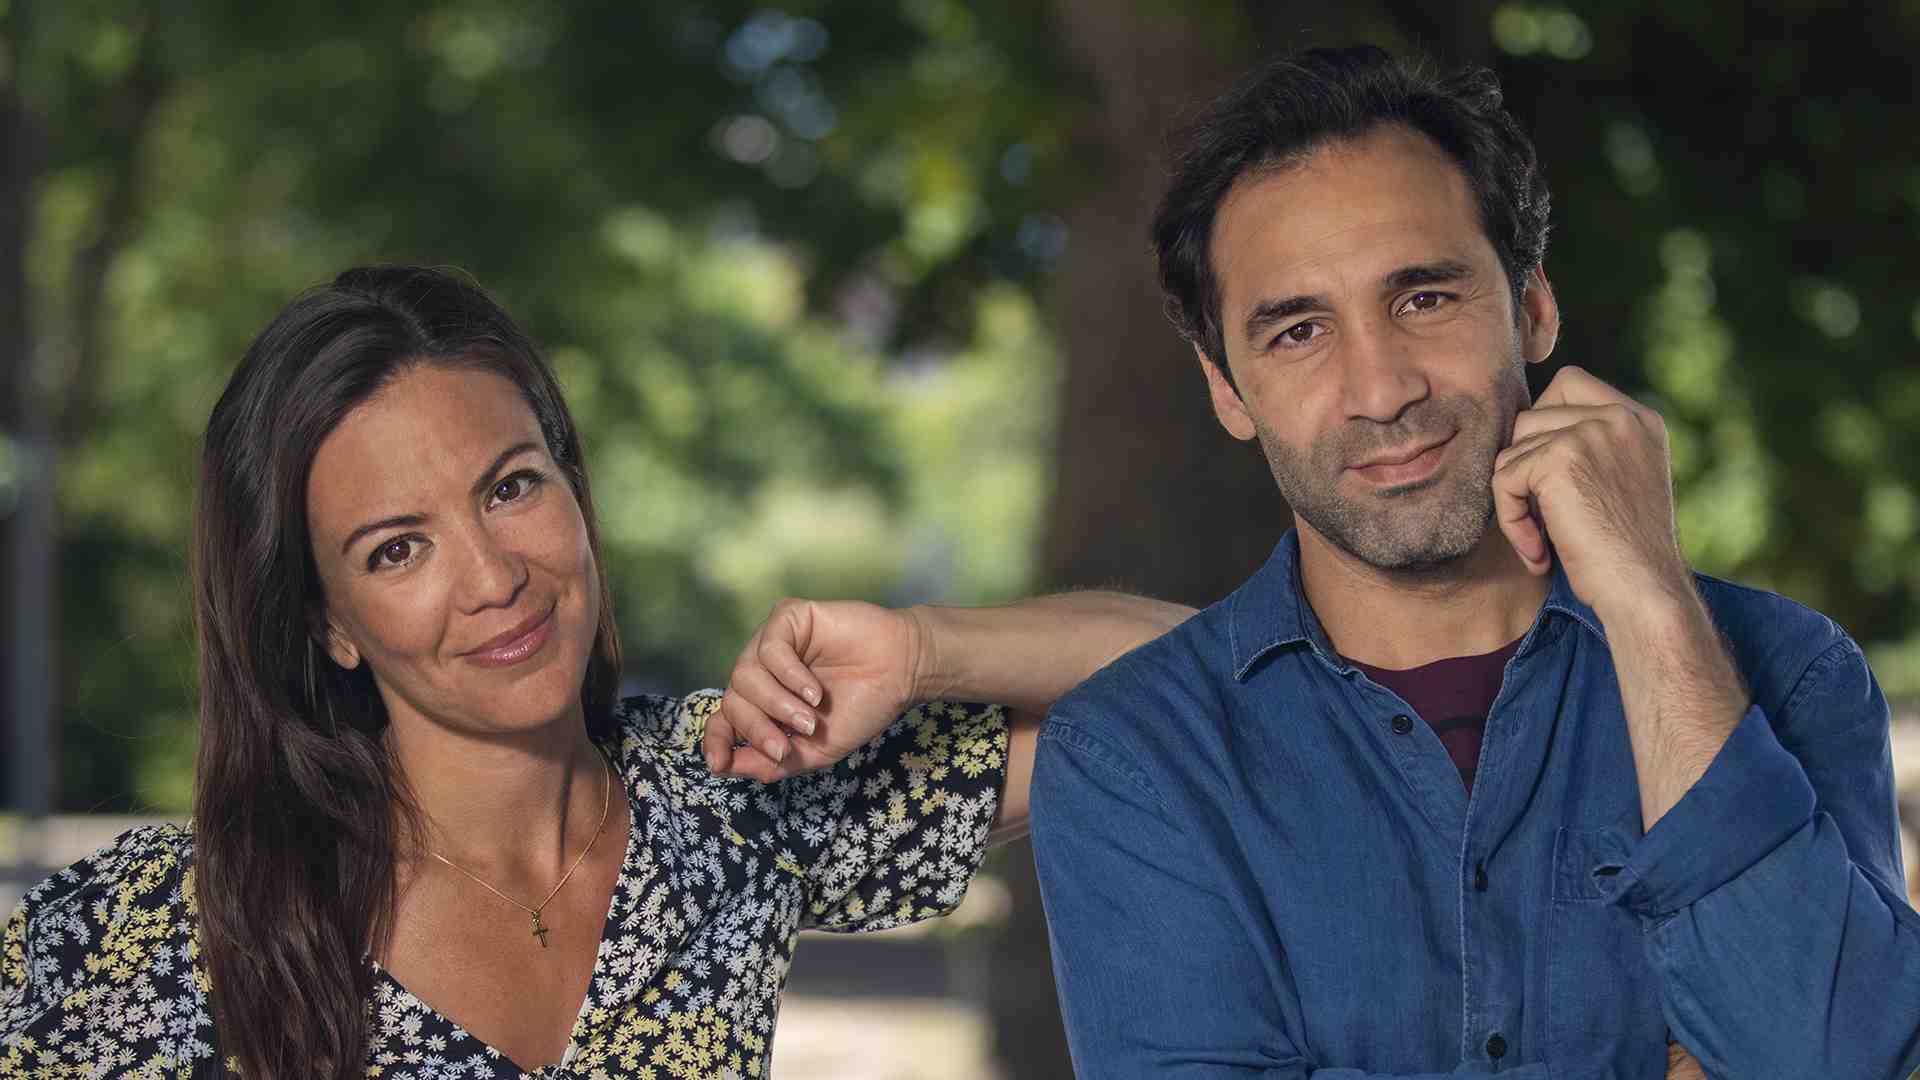 Johanna Lazcano och Gino Estéra, skådespelare i rollerna som Martina och Jamal i dramaserien Hitta hem